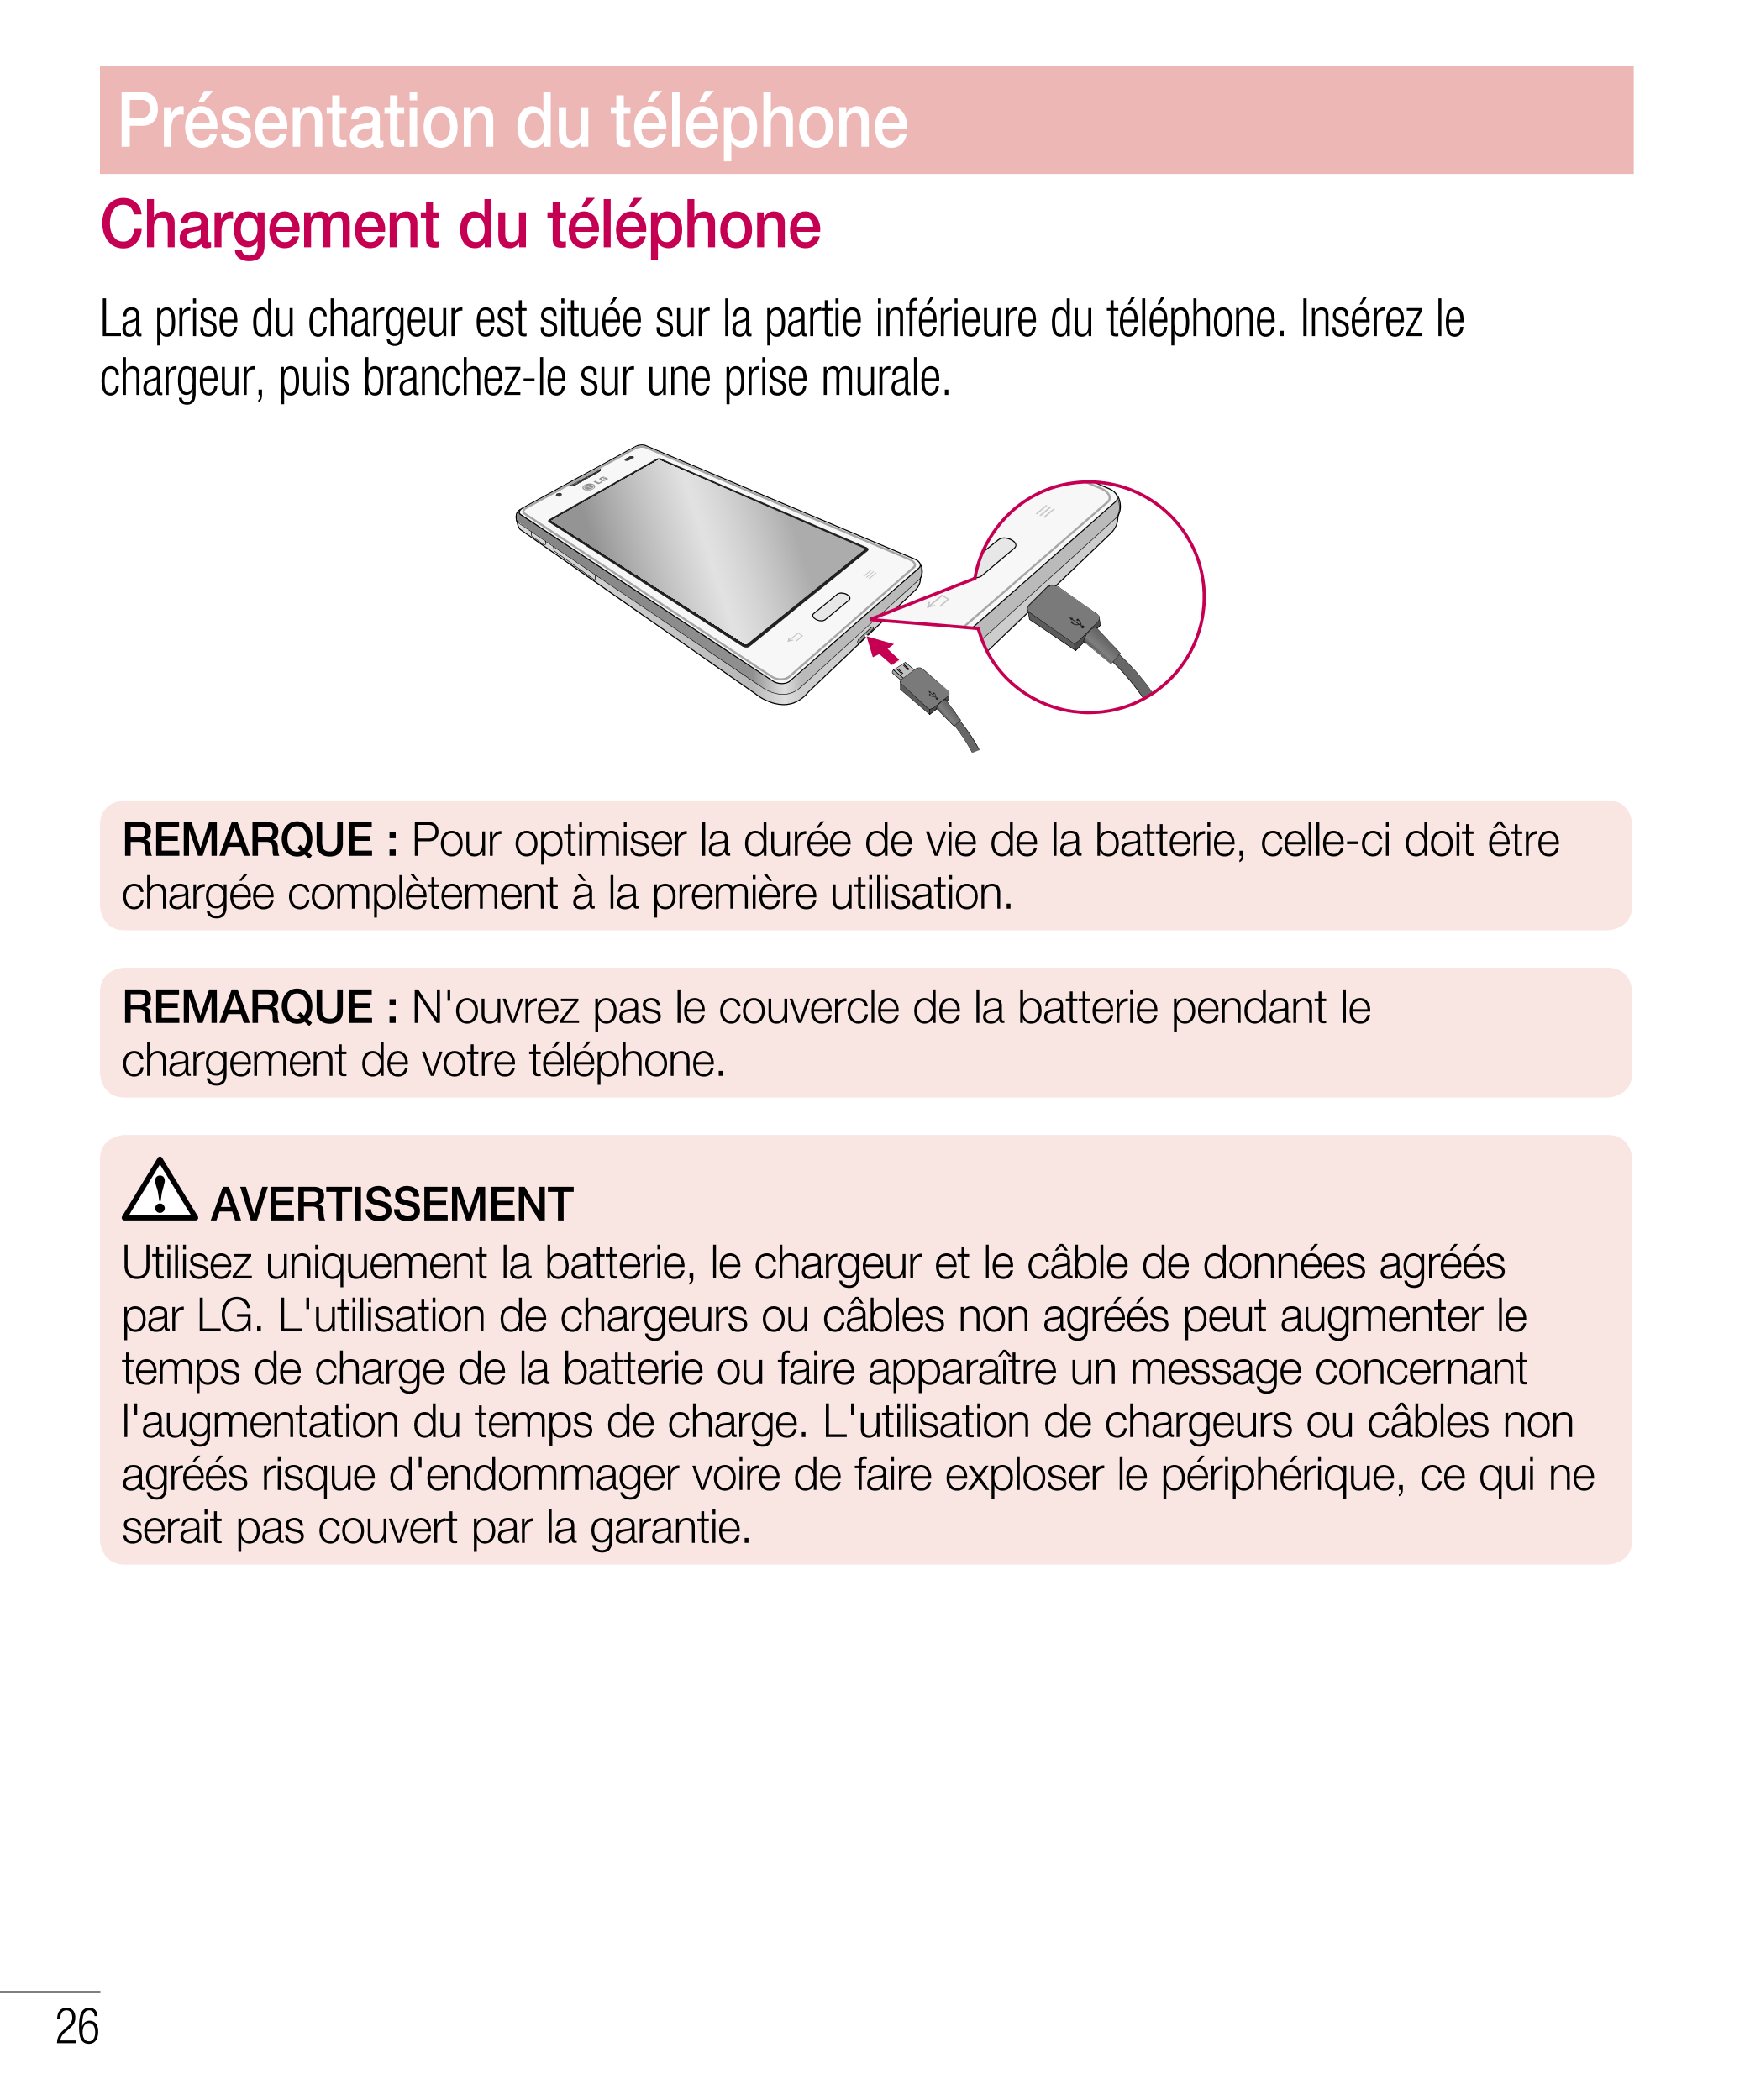 Présentation du téléphone
Chargement du téléphone
La prise du chargeur est située sur la partie inférieure du téléphone. Insérez